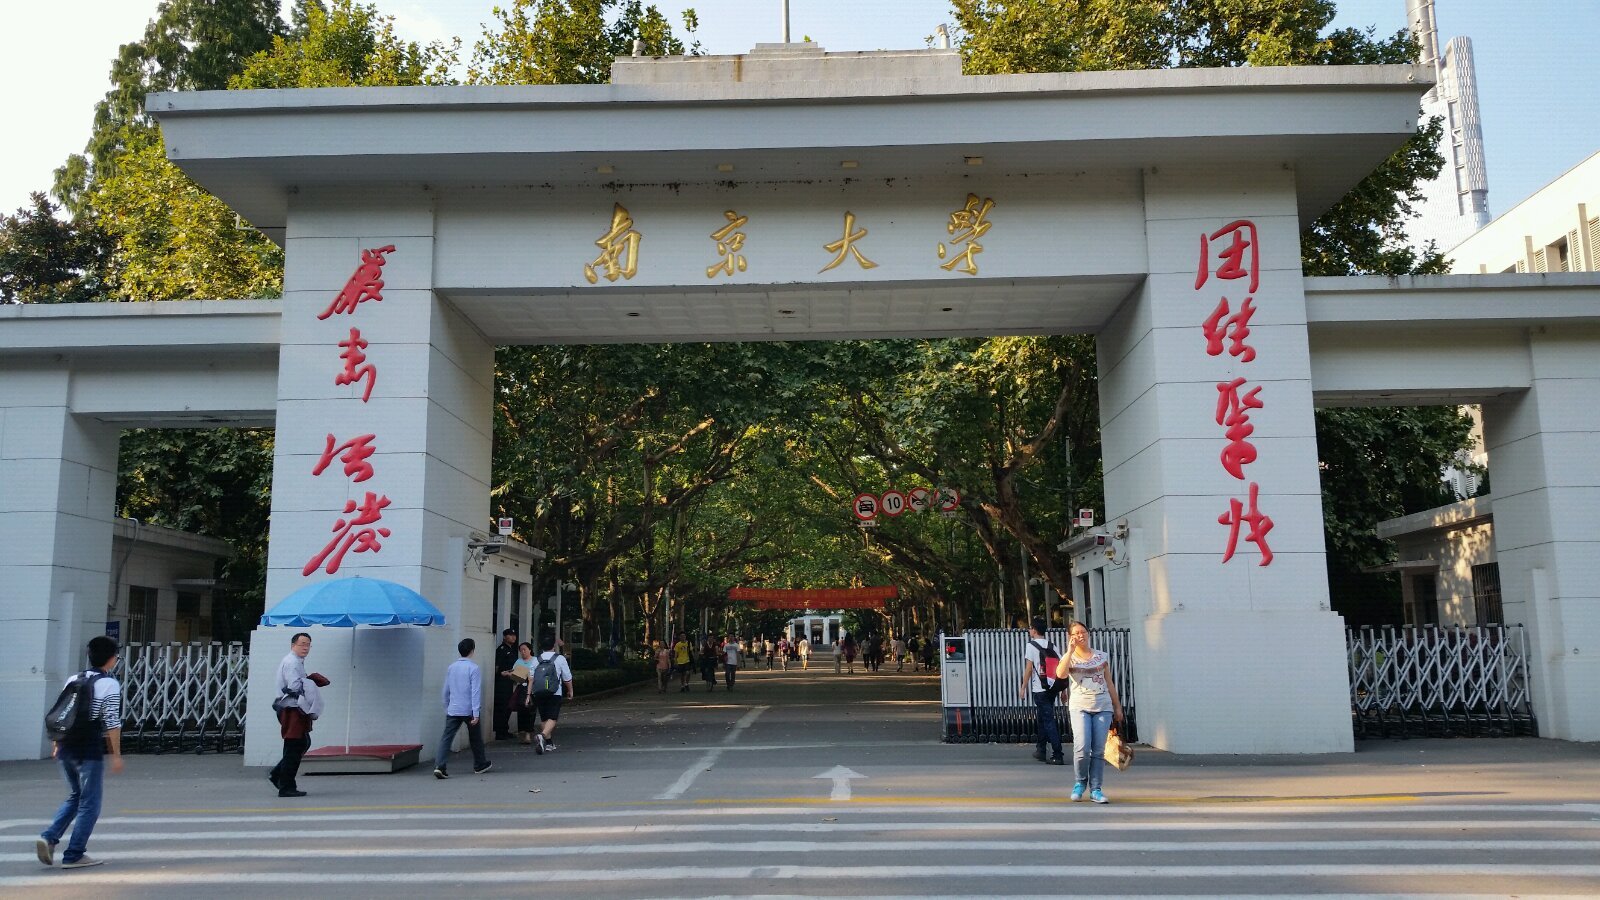 南京离合肥很近,高铁,火车都可以到达,是合肥大学生旅游最喜欢的一个